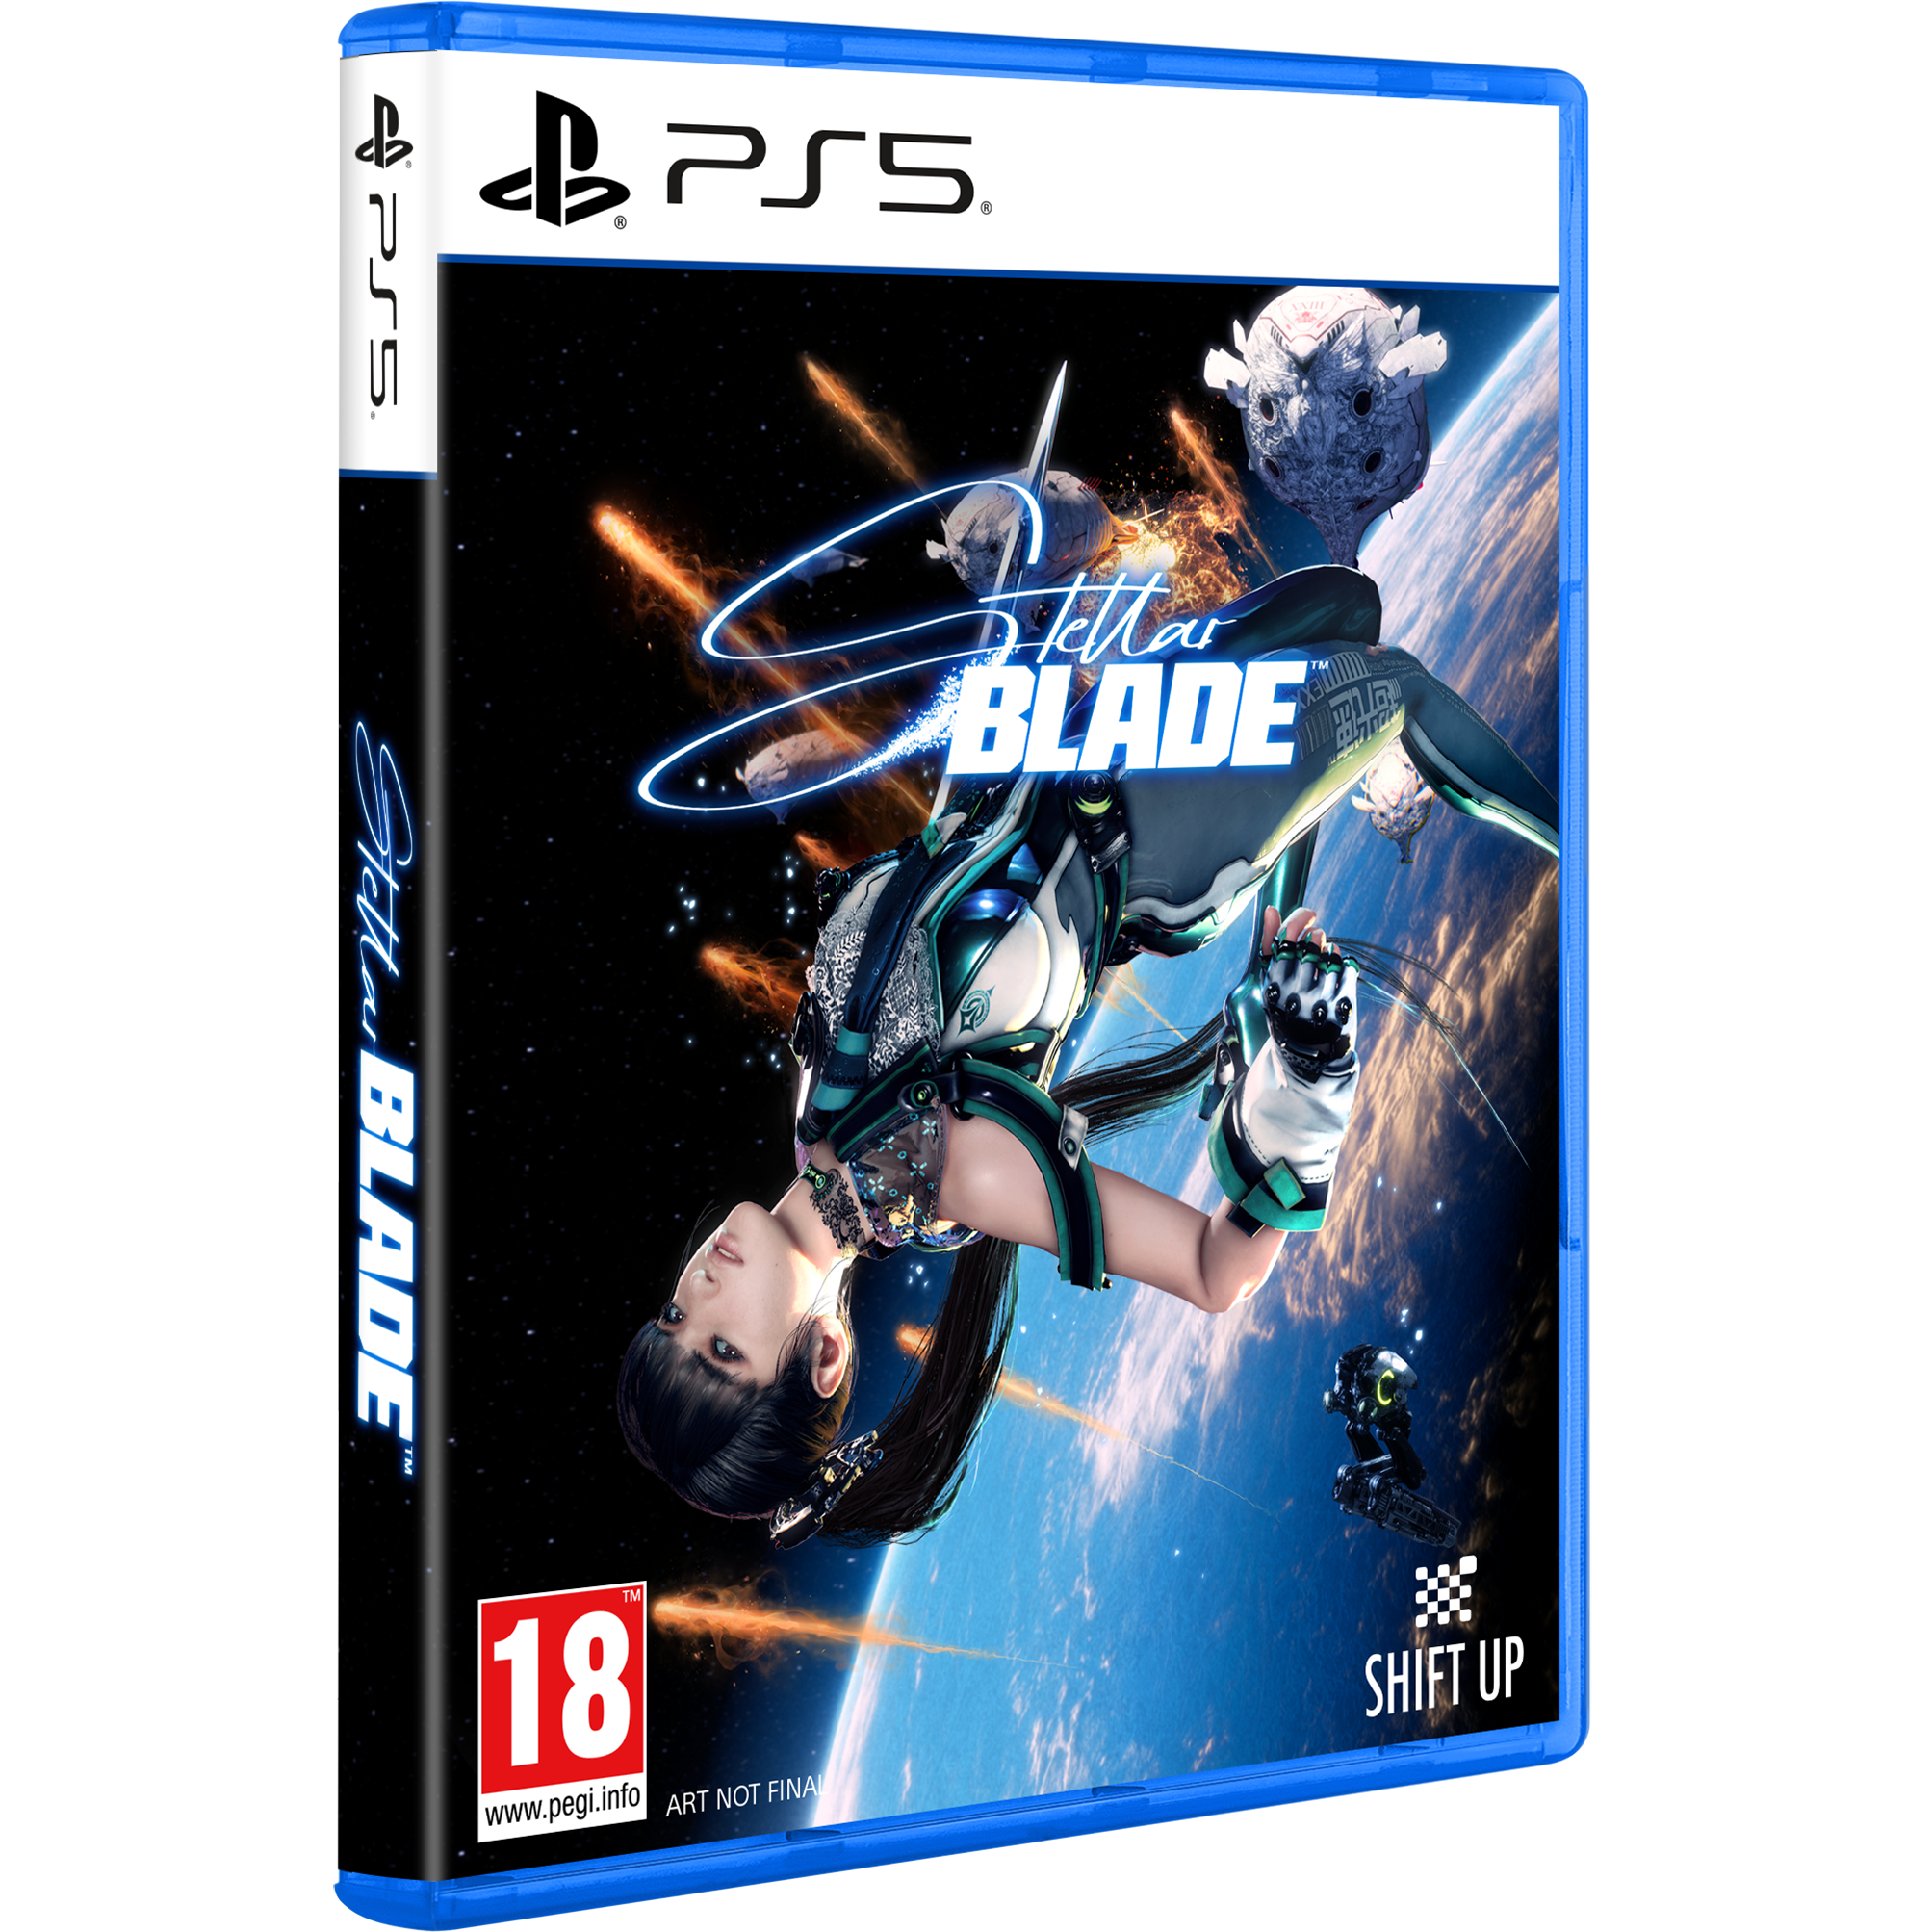 משחק Staller Blade לקונסולת Sony PlayStation 5